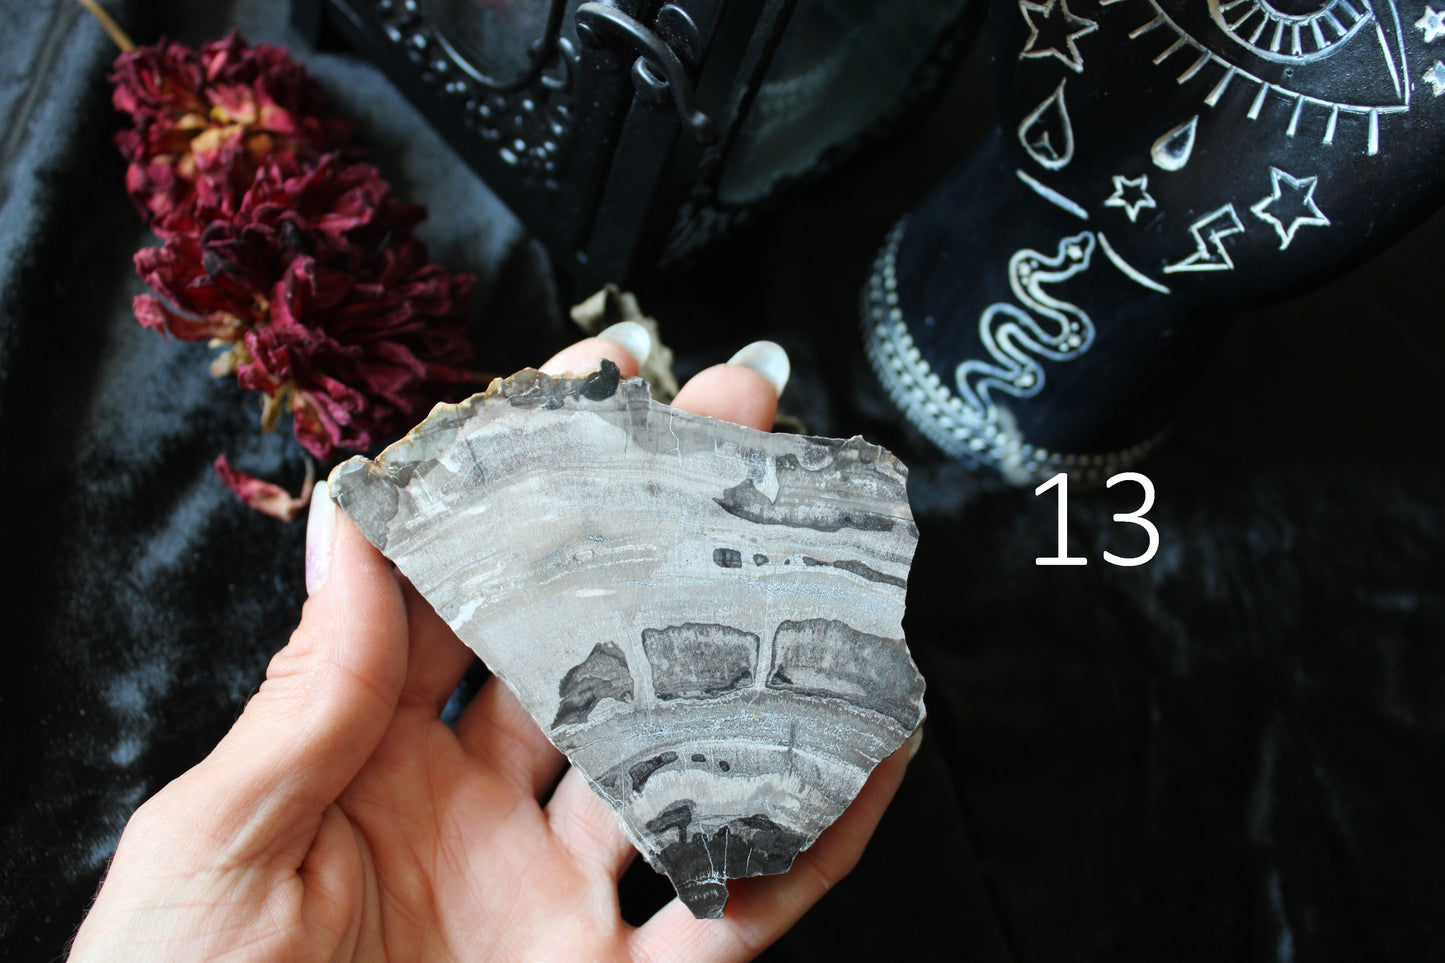 1 morceau de bois fossile AU CHOIX - format colis